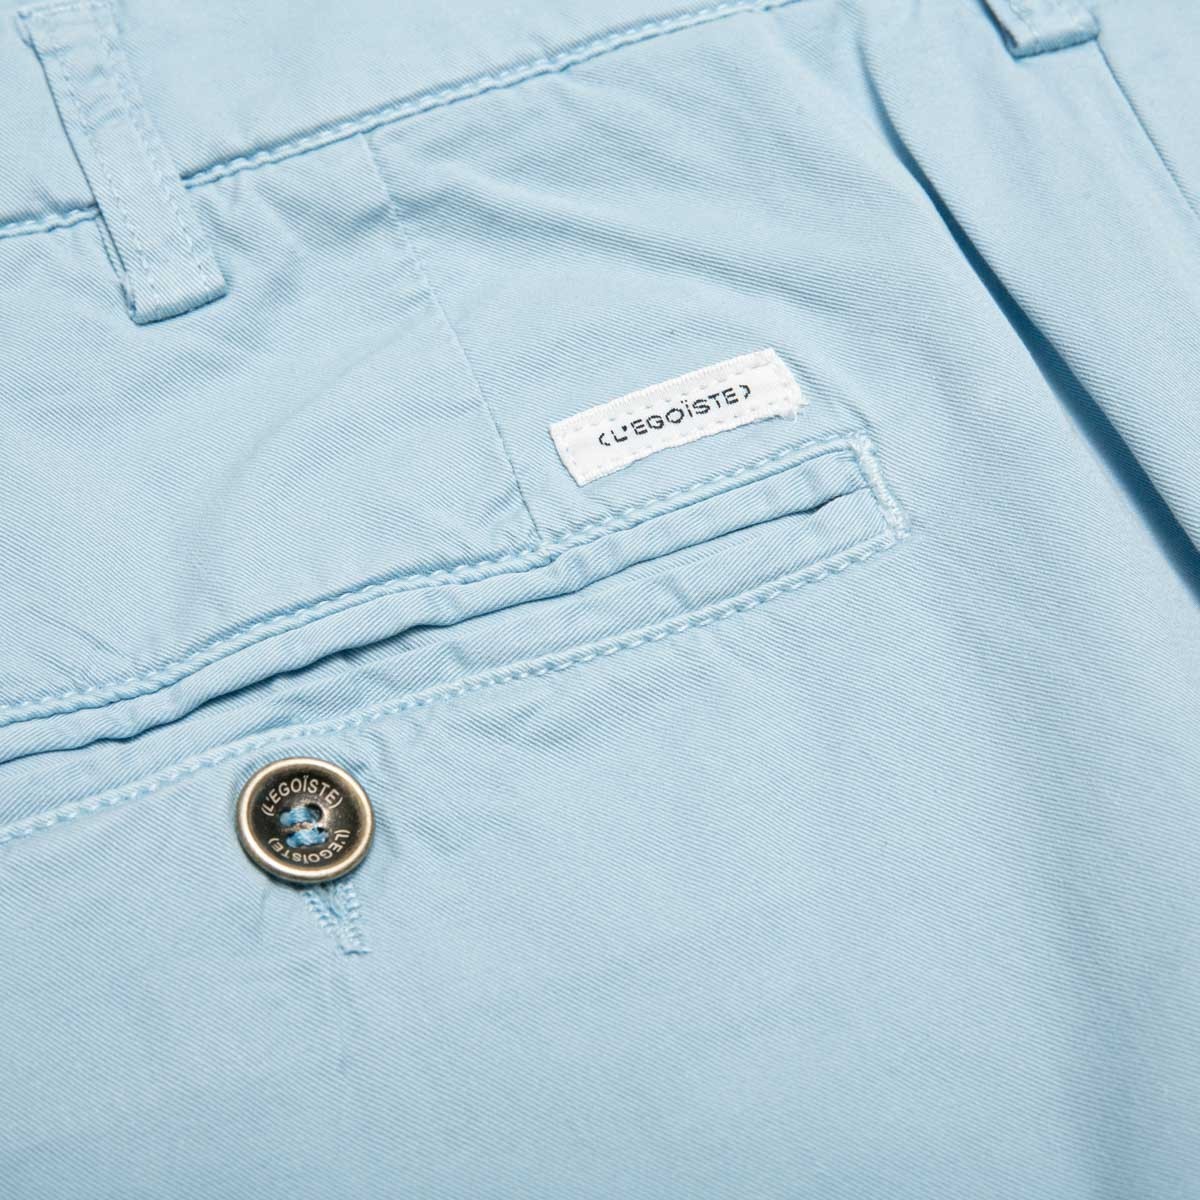 pantalon-chino-bleu-ciel-pour-homme-detail-poche-arriere